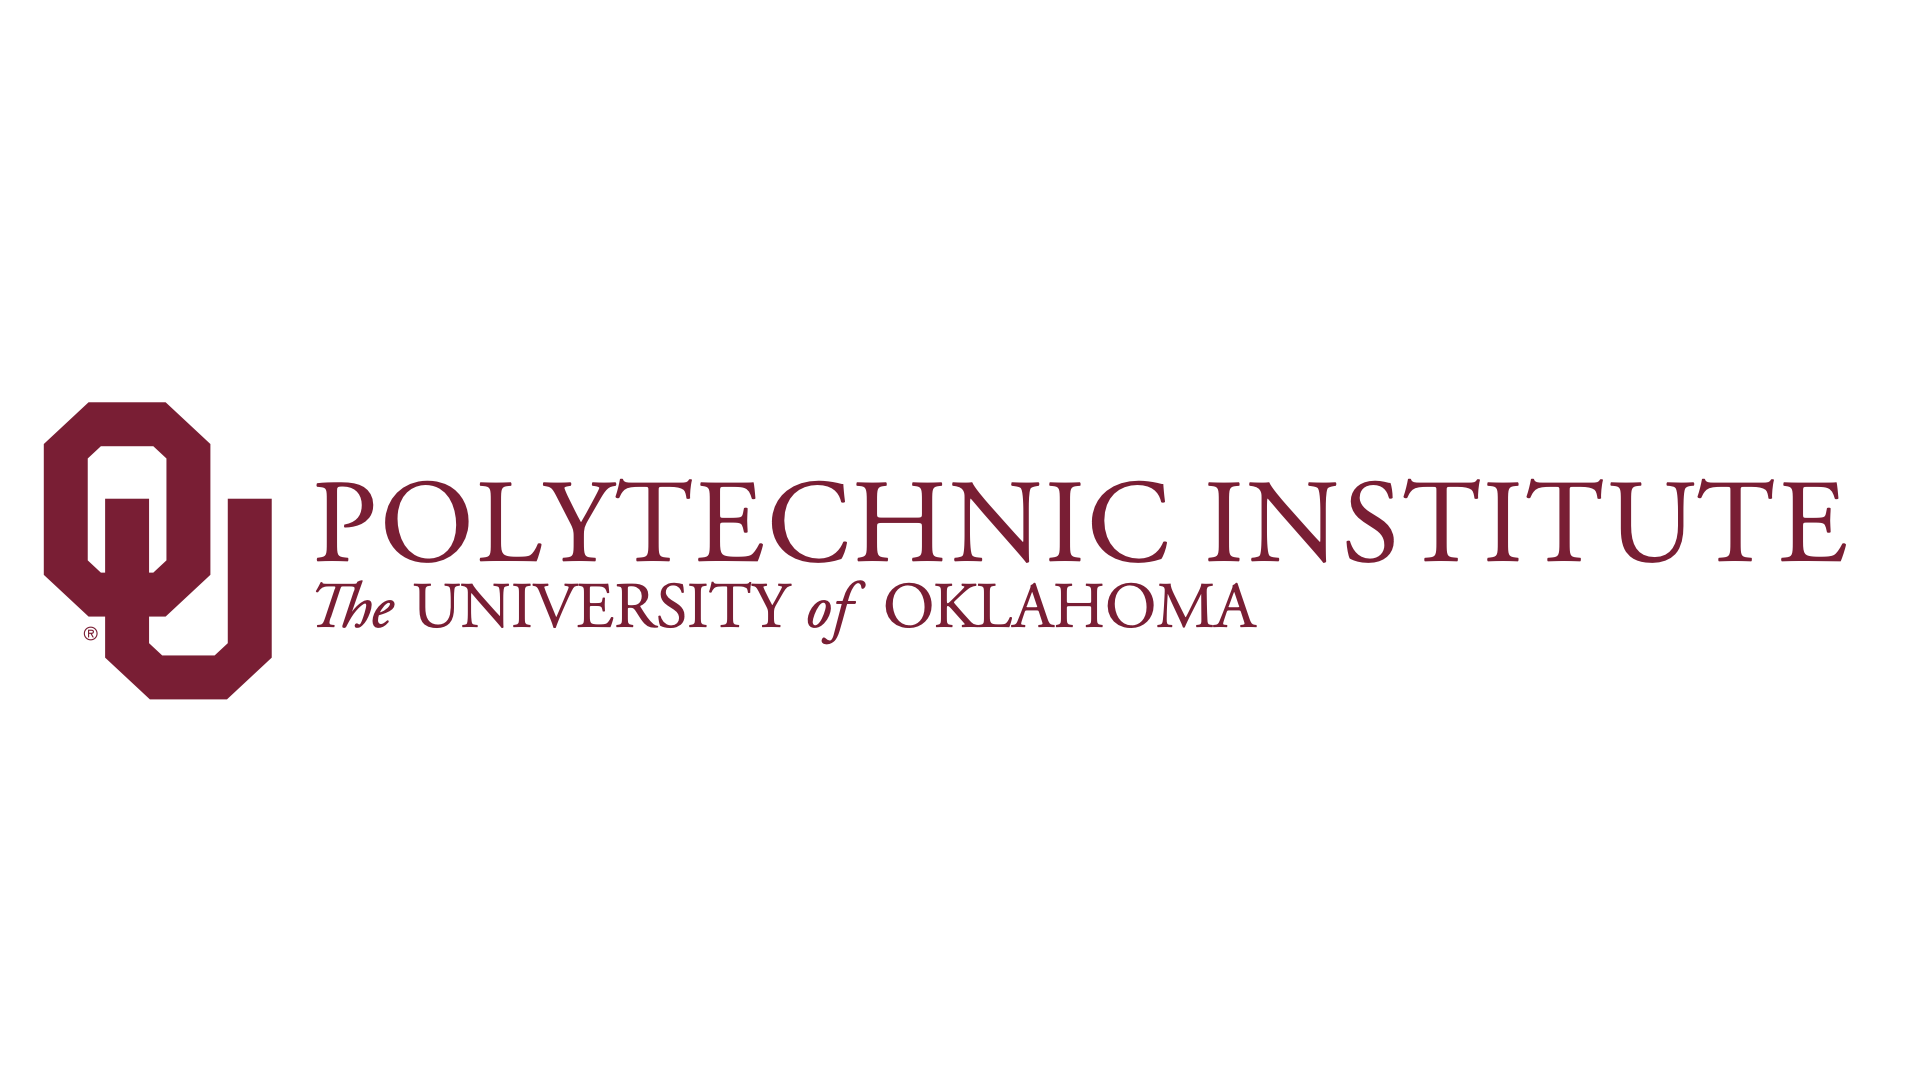 University of Oklahoma Polytechnic Institute logo